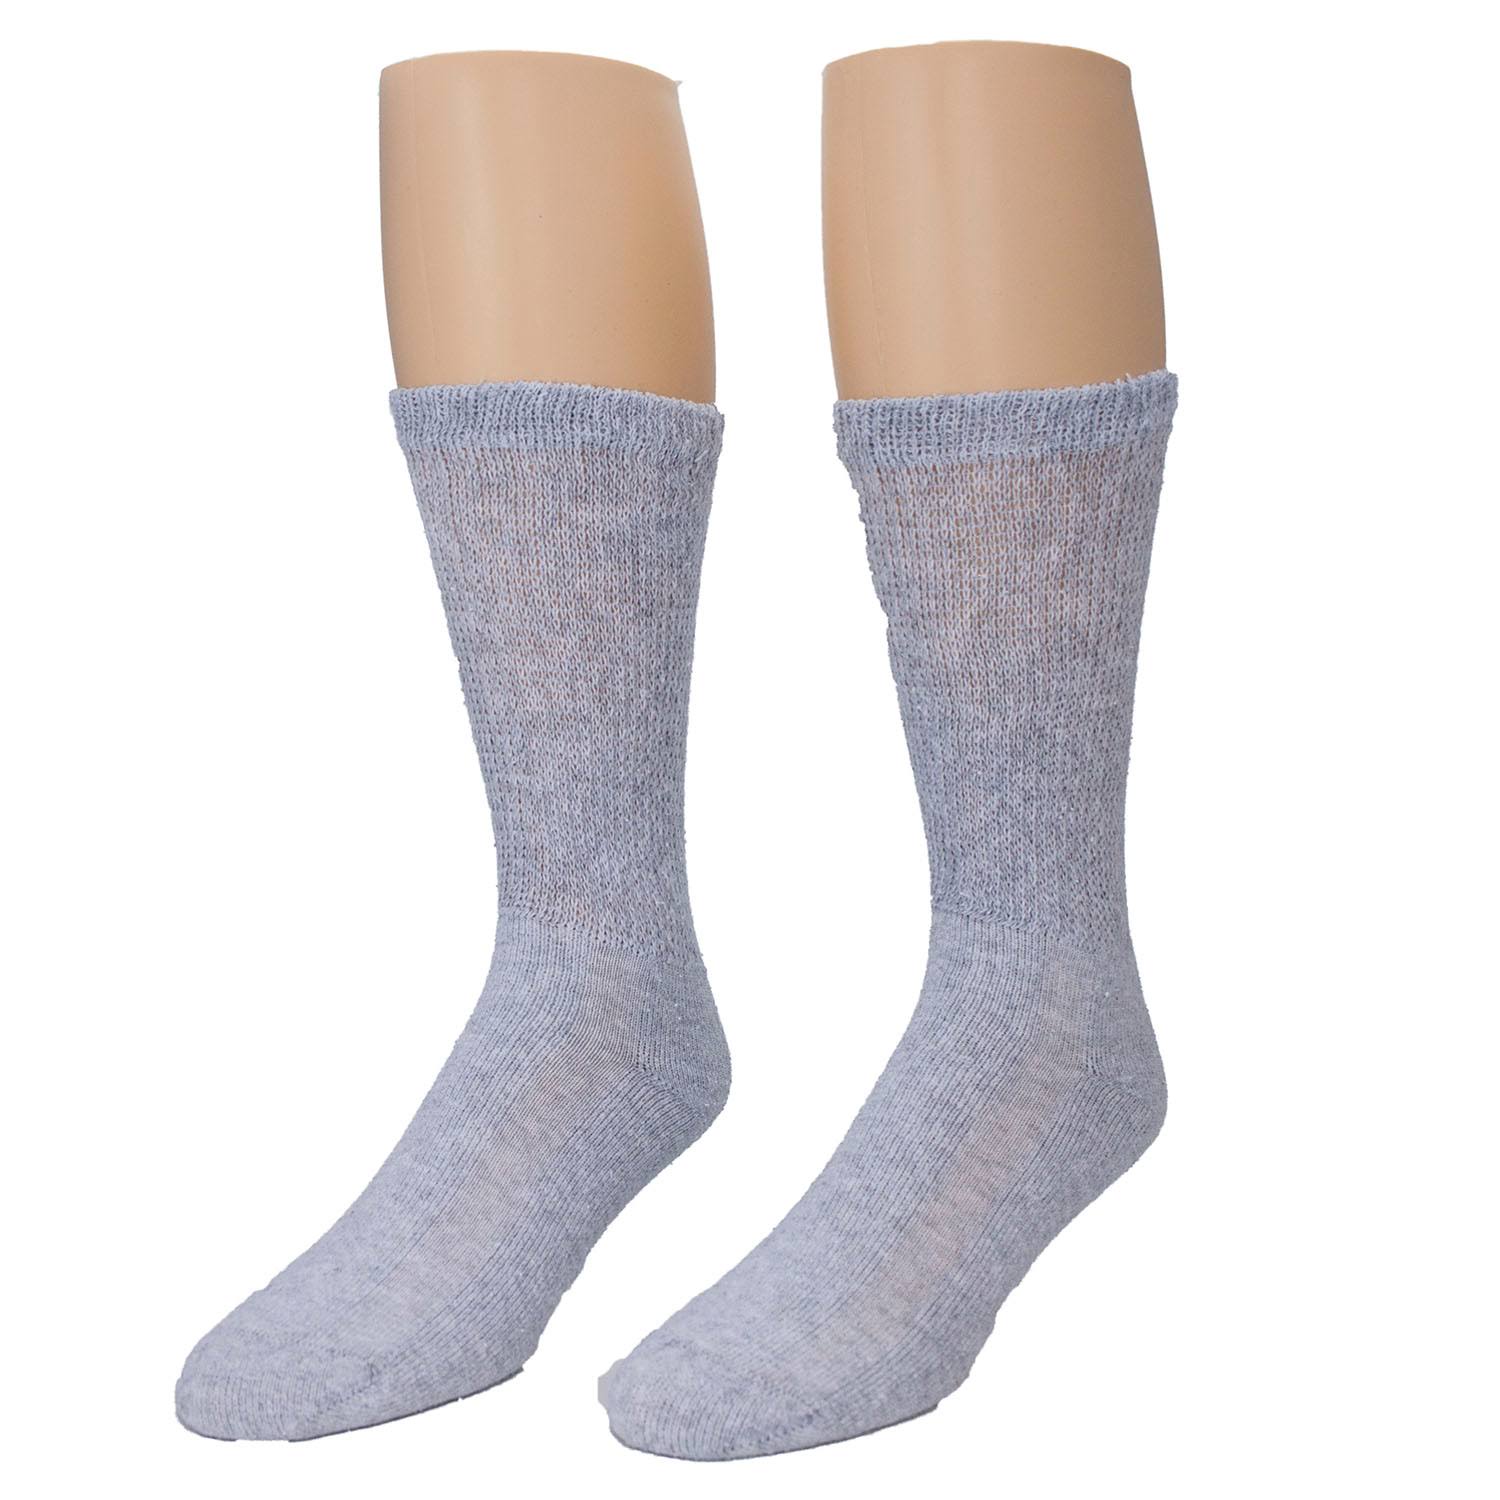 Sole Pleasers Men's Diabetic Socks - White, Size 10-13